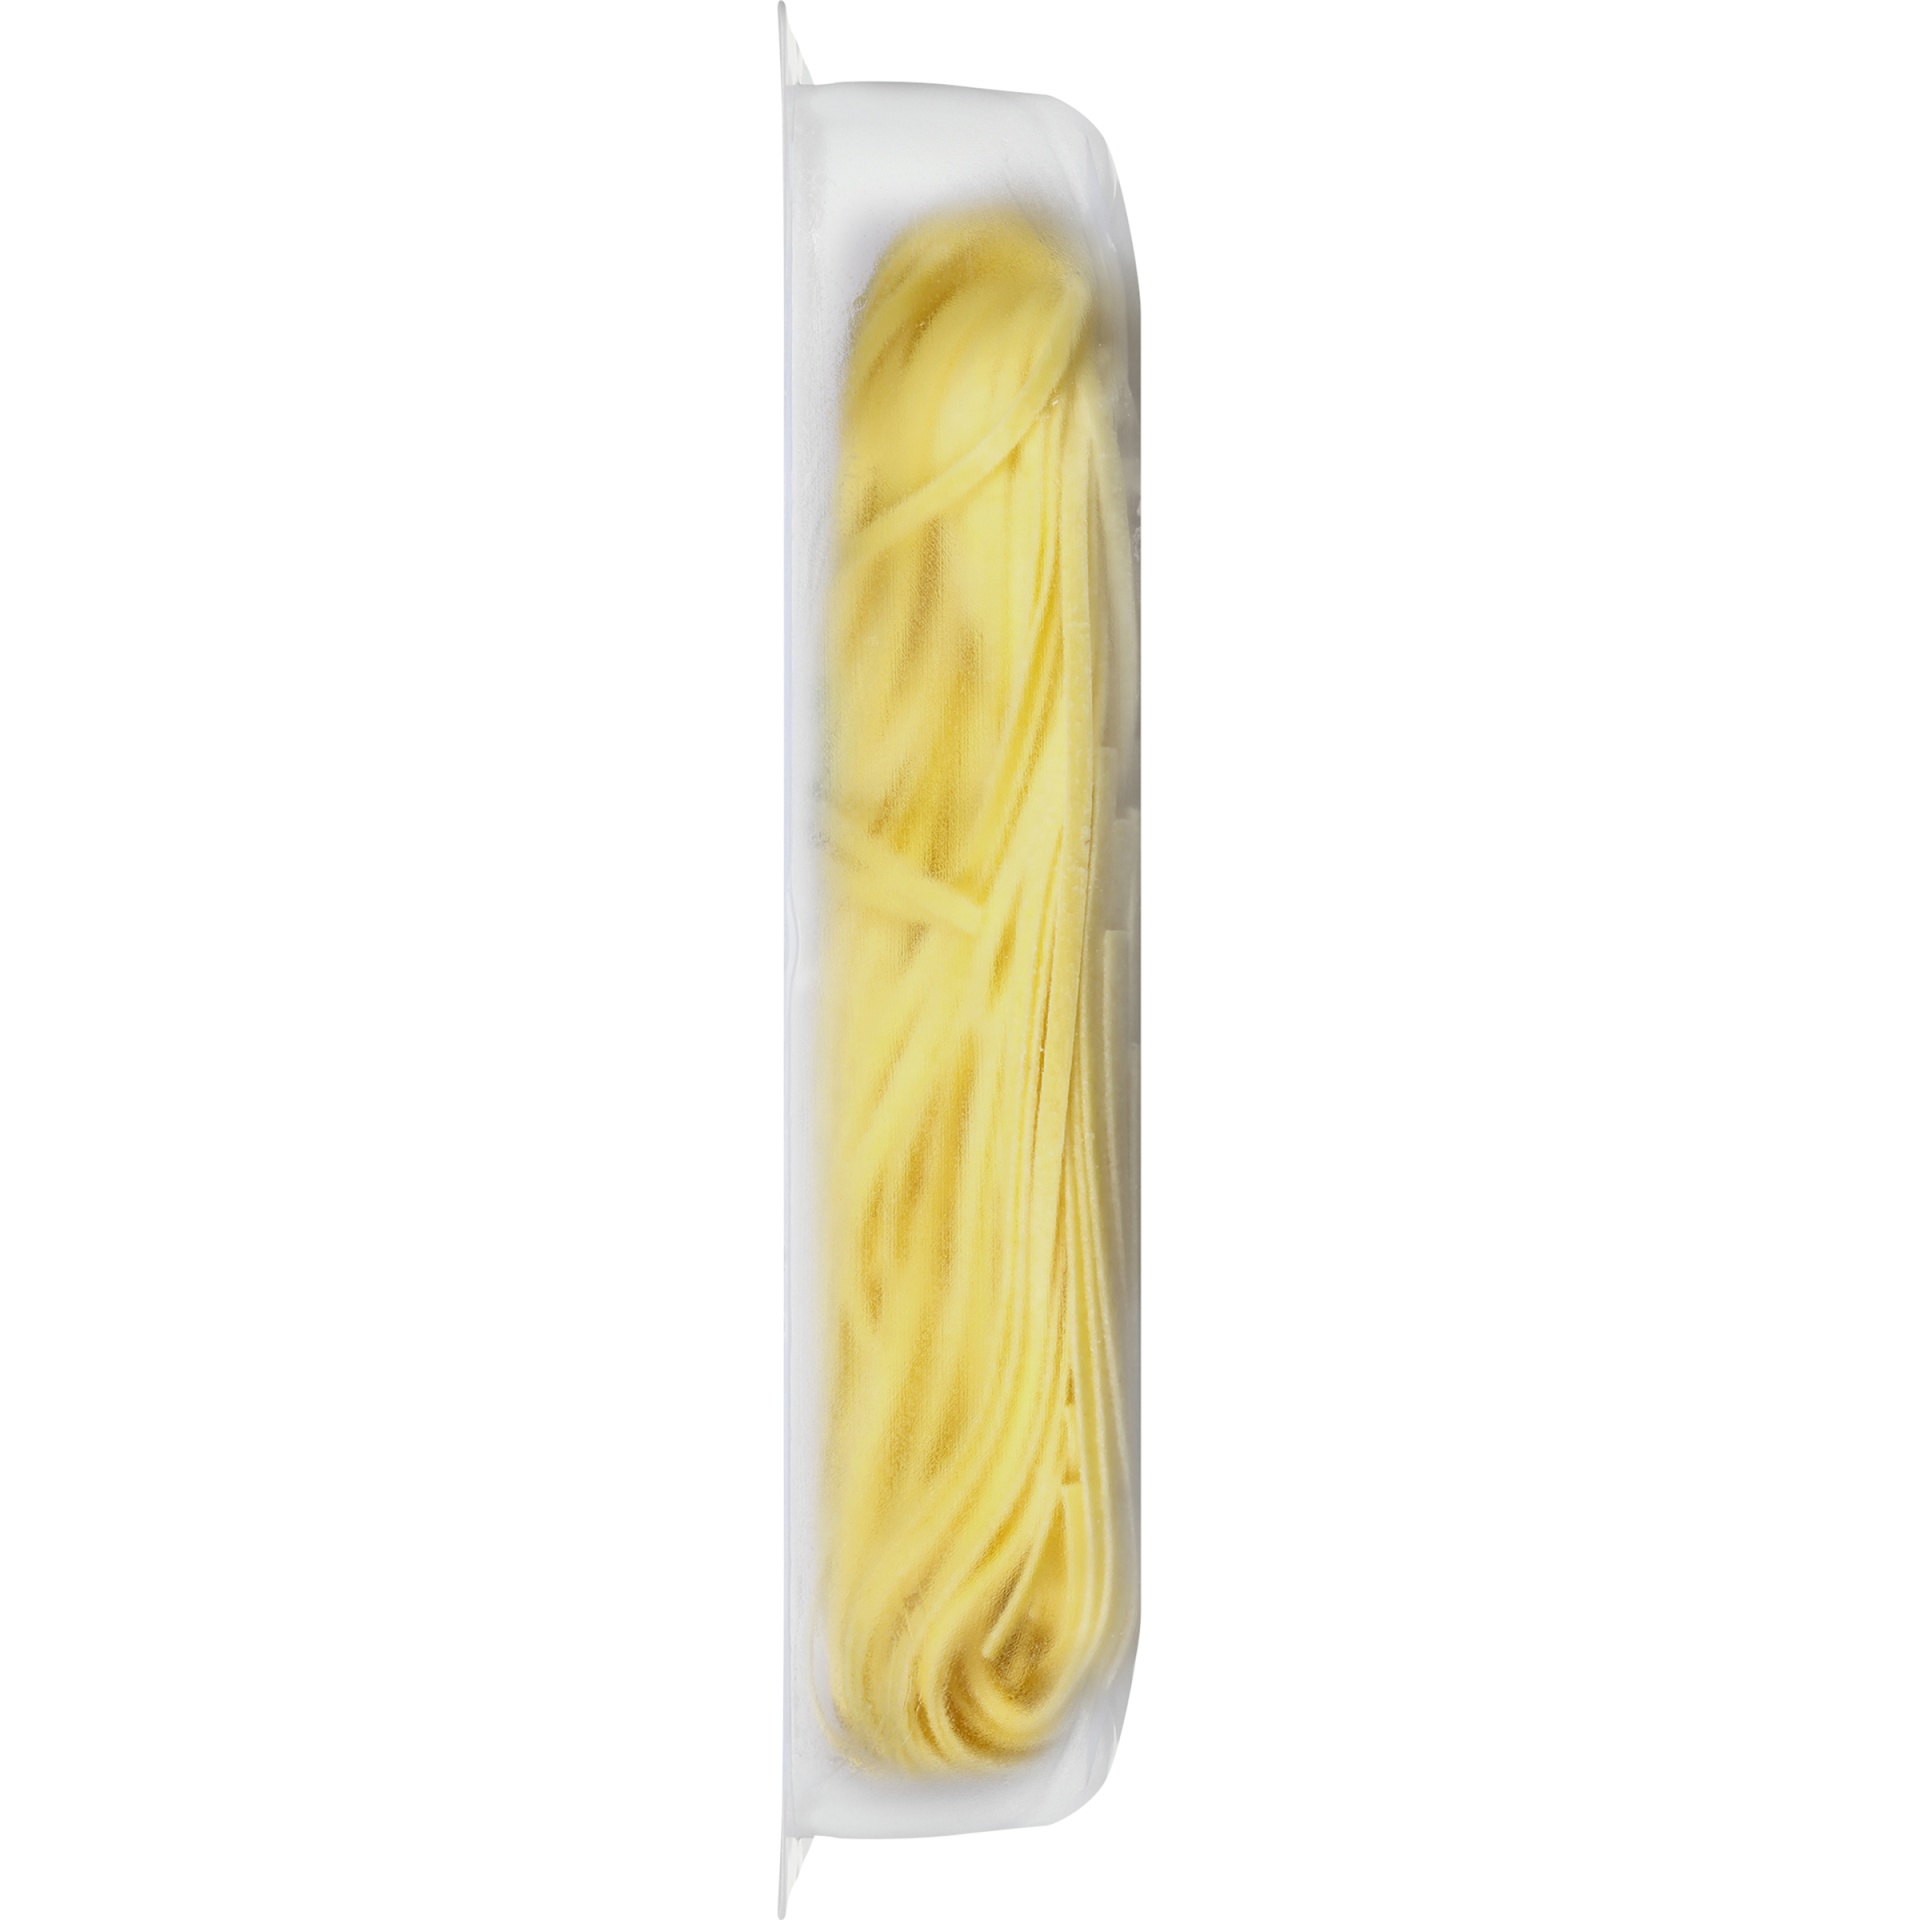 slide 3 of 6, Buitoni Linguine, Refrigerated Pasta Noodles, 9 oz Package, 9 oz